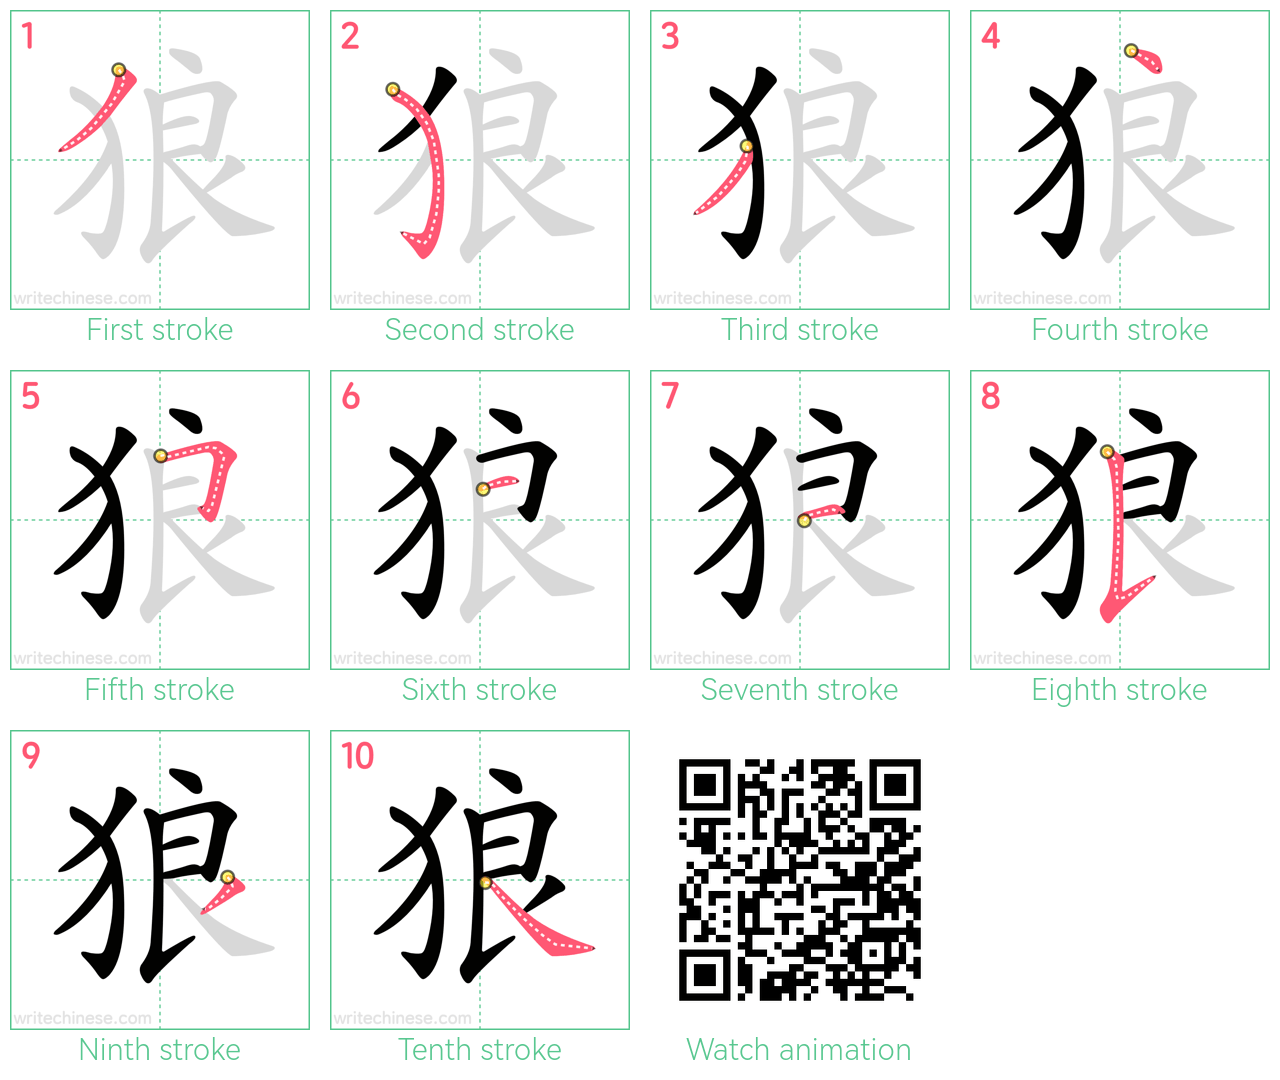 狼 step-by-step stroke order diagrams